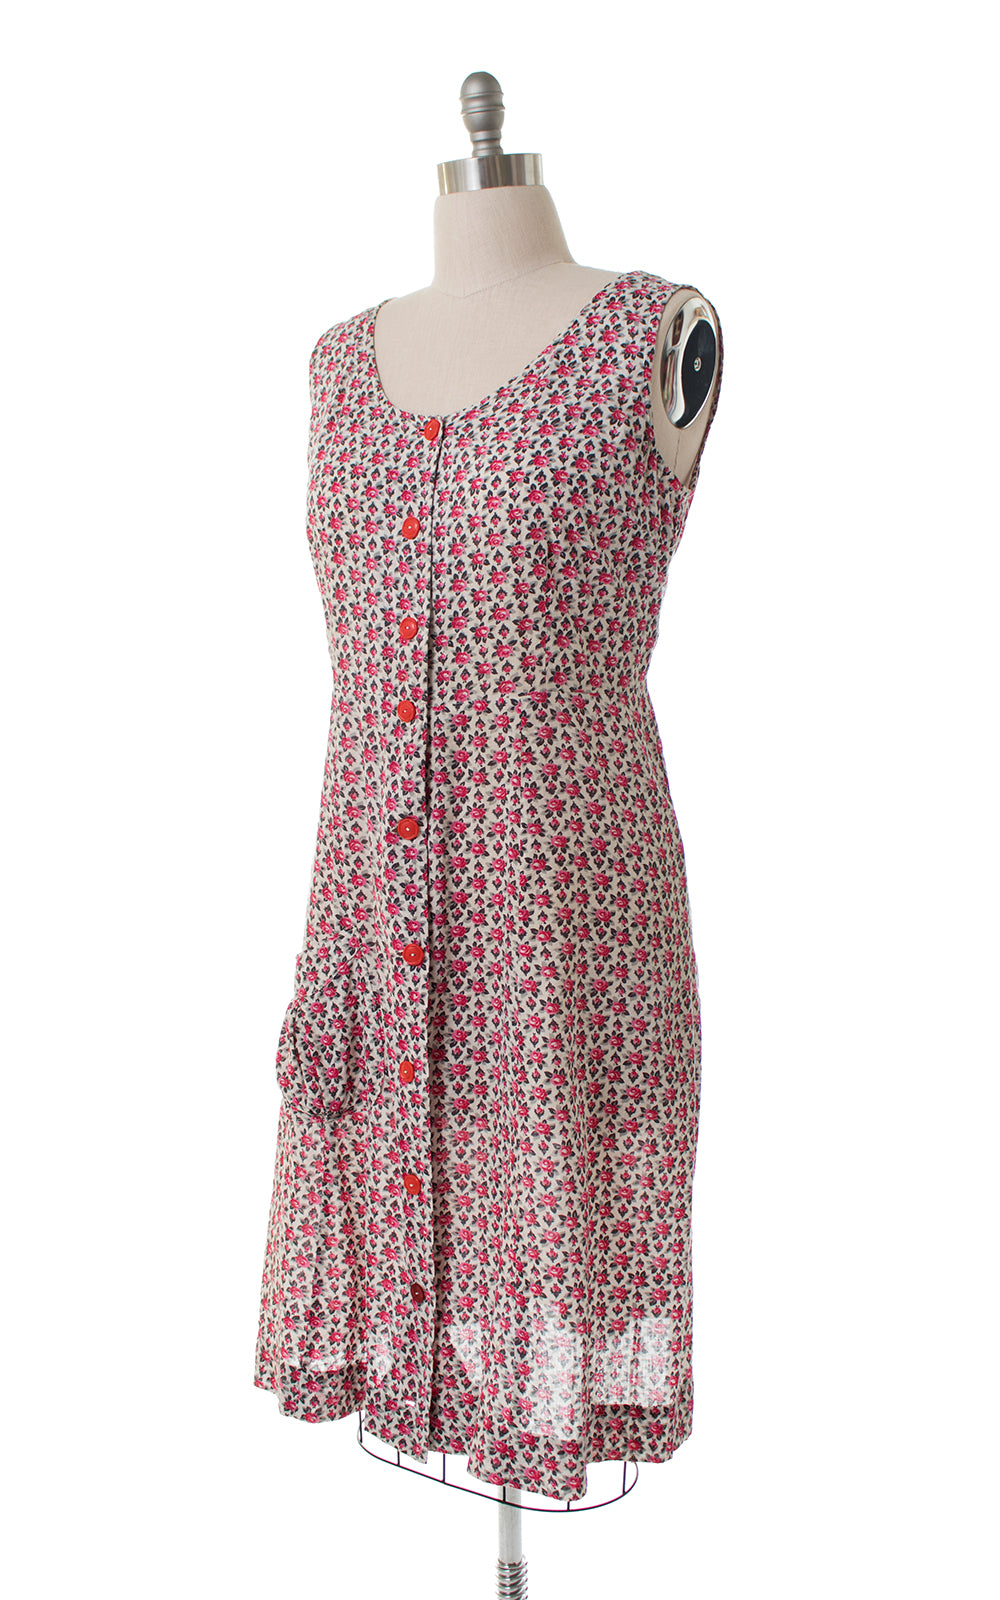 1940s Rose Print Cotton Shirtwaist Sundress